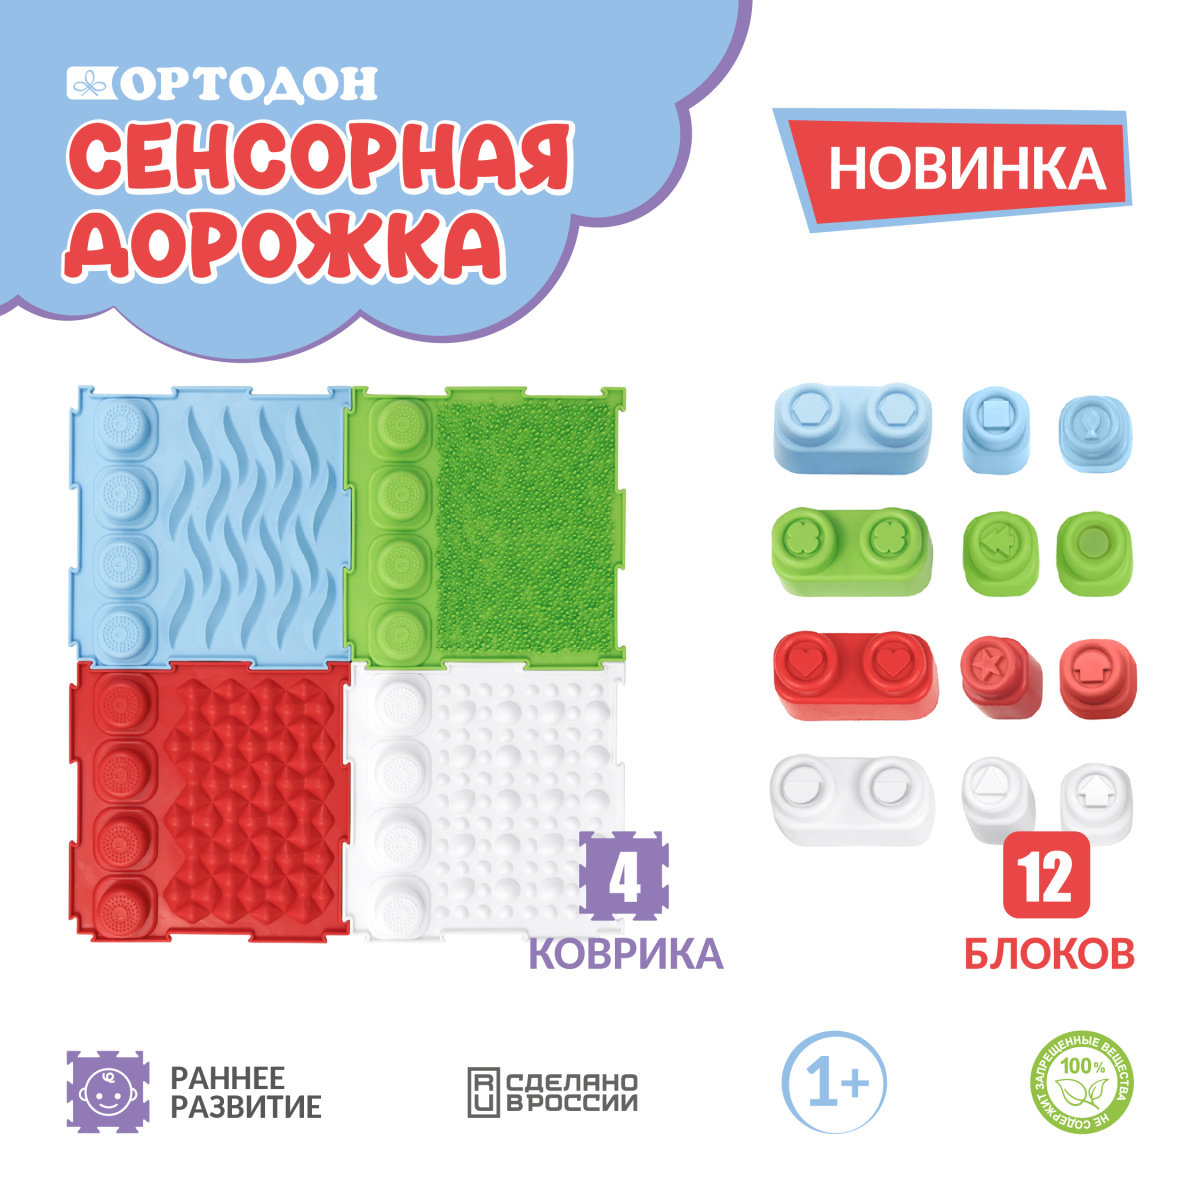 Детские мягкие коврики пазлы с картинками. ЭкоПром, Россия